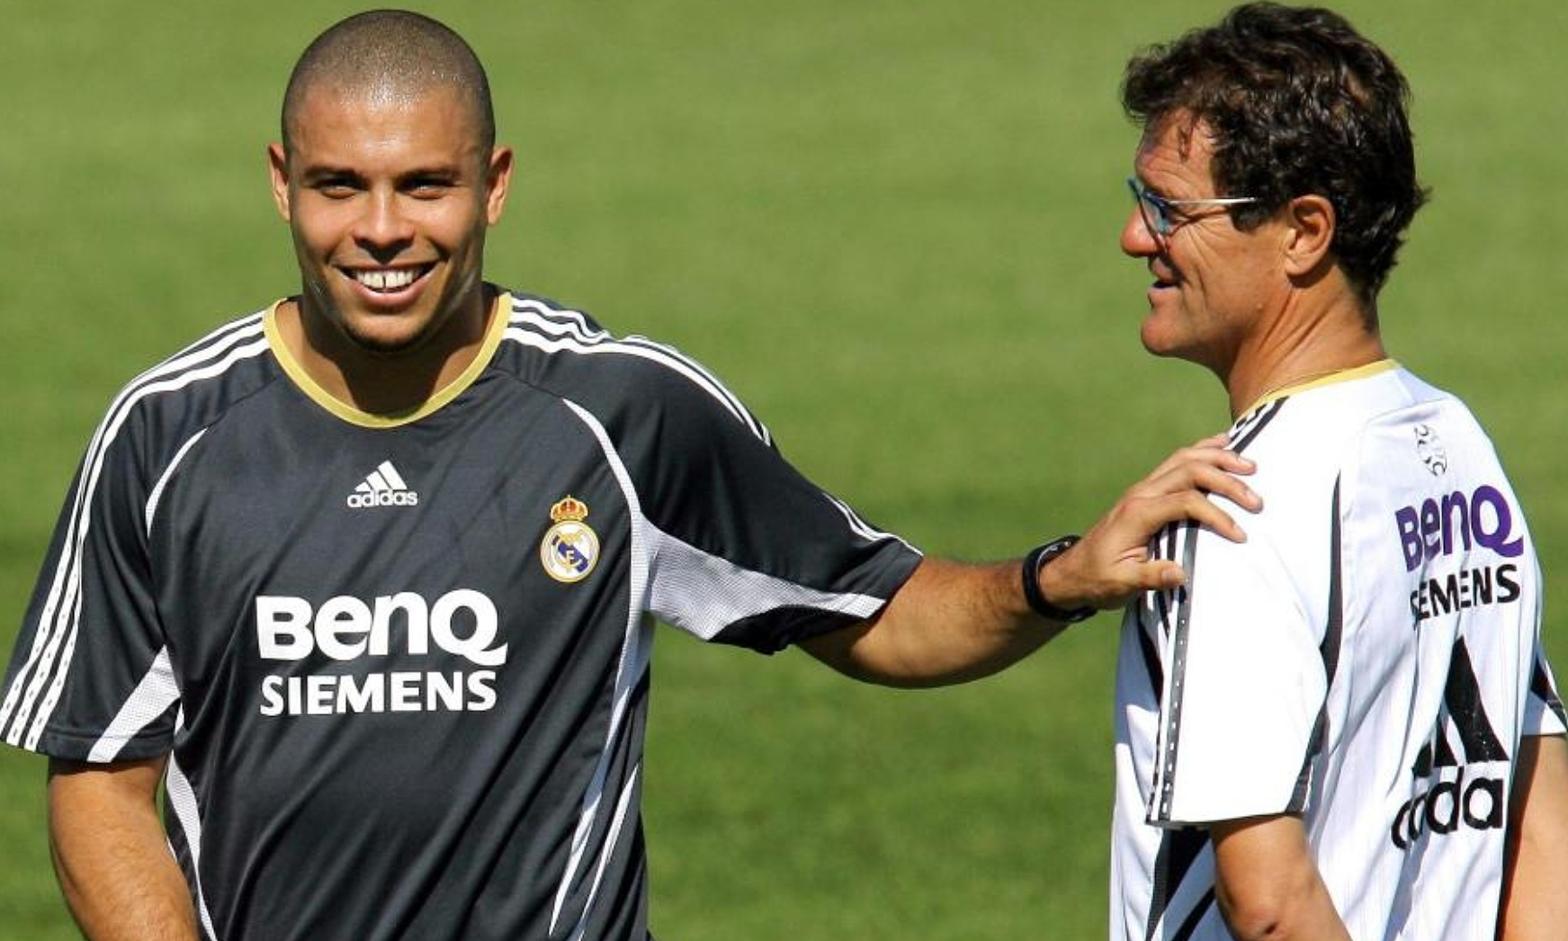 Capello tiết lộ lý do đuổi Ronaldo Nazario khỏi Real